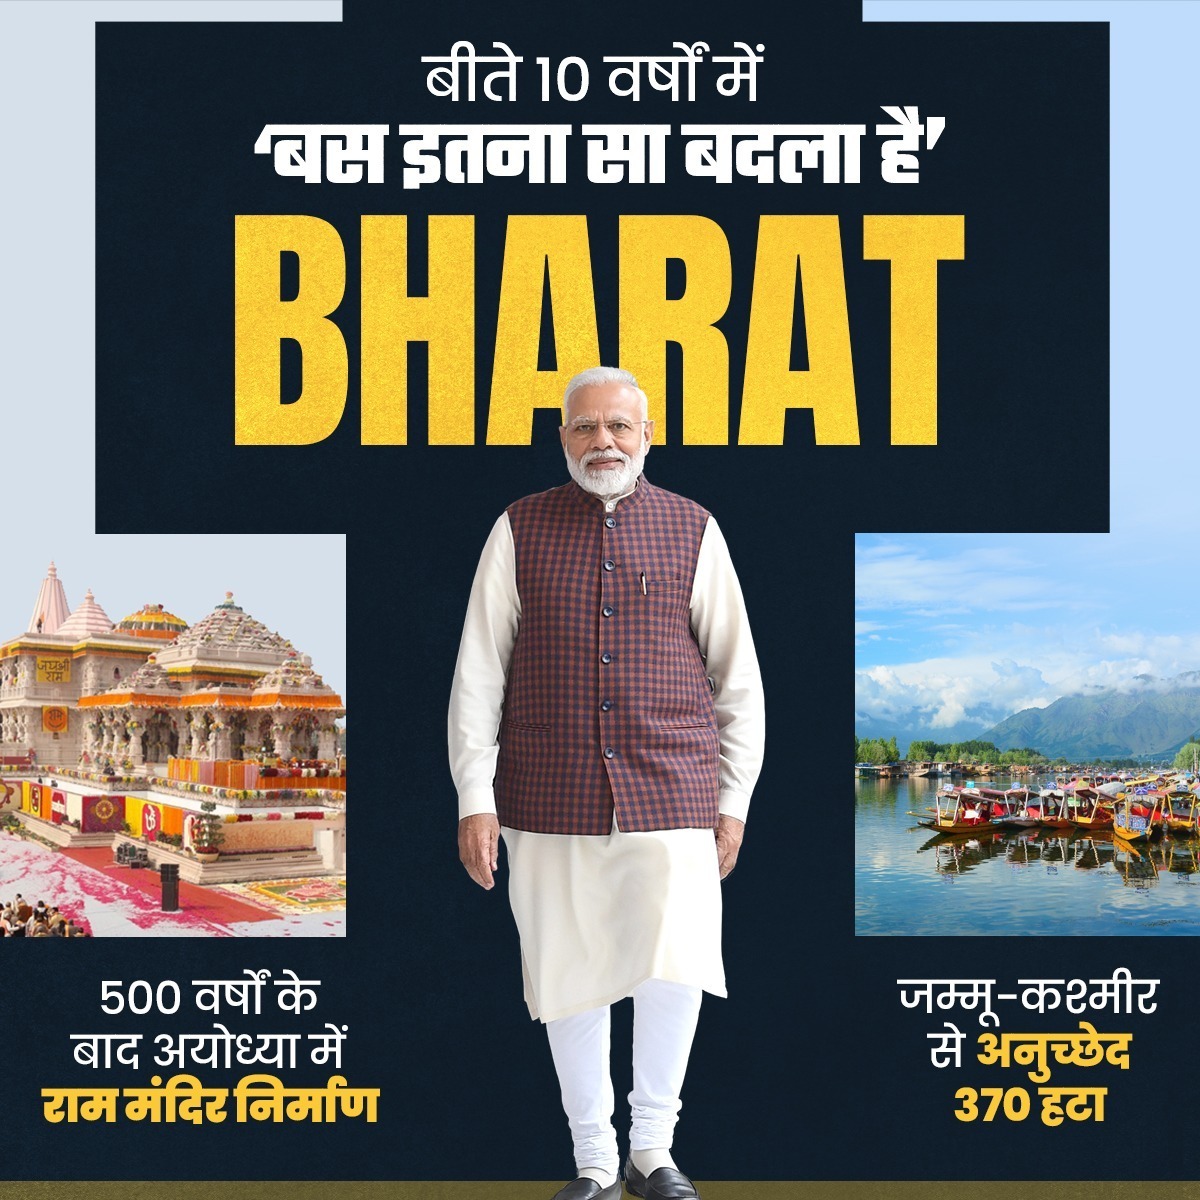 बीते 10 वर्षों में 'बस इतना सा बदला है' BHARAT

दशकों का इंतजार हुआ खत्म,
घाटी में आई शांति; लहराया सनातन का परचम!